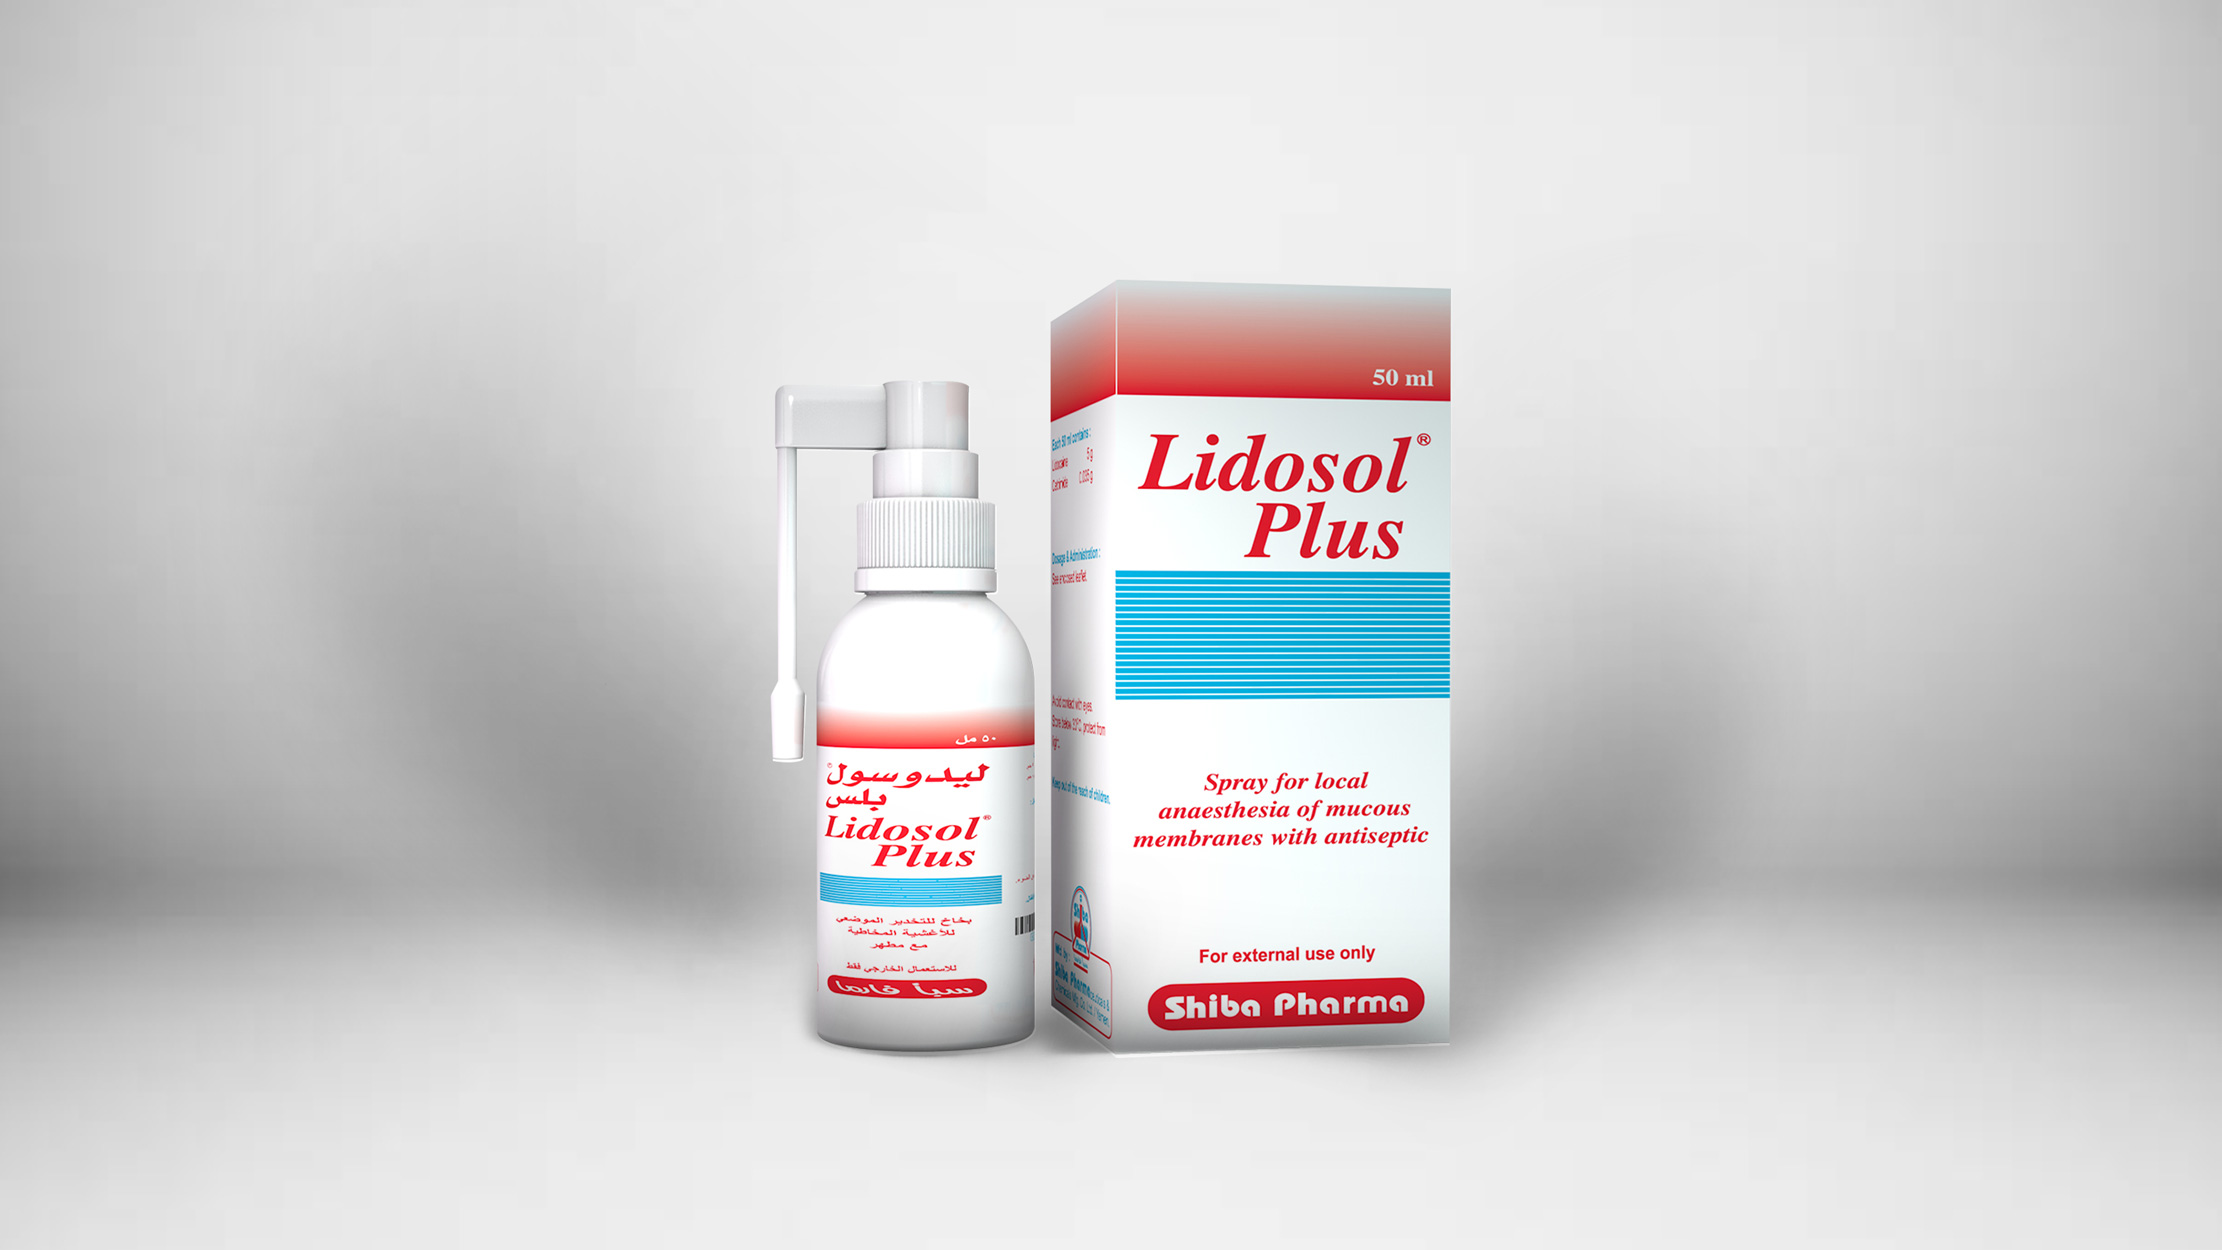 لیدوسول بلس : <p>التركیب :</p>

<p>كل جرعة )بخة ( تحتوي على : لیدوكائین&nbsp; ۱۰ملجم.</p>

<p>سیتراماید&nbsp; ۰٫۰۷ملجم.</p>

<p>الوصف :</p>

<p>لیدوسول بلس مخدر موضعي و مطھر یتكون من مادتین فعالتین و تشمل مادة الـ لیدوكائین التي تستخدم كمخدر موضعي و تعمل على منع امتداد النبضات</p>

<p>على طول الألیاف العصبیة من خلال منع دخول أیونات الصودیوم عبر الغشاء العصبي بشكل مؤقت و مادة الـ سیتراماید والتي تستخدم كمطھر حیث أن لھا نشاط</p>

<p>قاتل للبكتیریا الموجبة و لكن یقل نشاطھا تجاه بعض البكتیریا السالبة. یبدأ مفعول التخدیر بشكل سریع خلال&nbsp; ٥ - ۲دقائق و یستمر مفعولھ من&nbsp; ۲۰ &ndash; ۱۰دقیقة . یتم</p>

<p>استقلاب الـ لیدوكائین بشكل رئیسي في الكبد و یتم طرحھ عن طریق الكلى. ینفذ الـ سیتراماید عبر الطبقة السطحیة للبشرة و بالرغم من أن امتصاصھ عبر القناة</p>

<p>الھضمیة ضعیف و مع ذلك یفرز أكثر من&nbsp; ٪۹۰من الجرعة في الفضلات.</p>

<p>دواعي الاستعمال:</p>

<p>لیدوسول بلس مخدر موضعي و مطھر یستخدم في البالغین و الأطفال فوق&nbsp; ٤سنوات لمنع الألم المصاحب للحالات التالیة :</p>

<p>- عند اجراء العملیات الجراحیة الصغرى في تجویف الفم مثل فتح الخراریج و الدمامل السطحیة .</p>

<p>- عند إدخال الأنبوب و القسطرة خلال عملیة تنظیر الجھاز التنفسي والجھاز الھضمي، كمخدر للغشاء المخاطي في الفم .</p>

<p>- عند خلع الأسنان المسوسة أو المخلخلة وخلع أجزاء الجذور المخلخلة ، قبل الحقن، تركیب حلقات و جسور تقویم الأسنان و أطقم الأسنان .</p>

<p>- لتخفیف الغثیان عند أخذ طبعة الفك أو تصویر الفم بالأشعة السینیة .</p>

<p>الجرعة:</p>

<p>&nbsp;۲-۱جرعة من البخاخ عادةً ما تكون كافیة لإنتاج تأثیر التخدیر على منطقة معینة. یمكن أن تكرر الجرعة في&nbsp; ٤أو&nbsp; ٥مناطق مختلفة في تجویف الفم .</p>

<p>القیود على الاستعمال :</p>

<p>موانع الاستعمال</p>

<p>فرط الحساسیة تجاه أحد مكونات المستحضر أو المخدرات الموضعیة الأخرى من نوع الأمیدات.</p>

<p>المحاذیر</p>

<p>- المرضى المصابون بجروح أو رضوض في الأماكن المراد تخدیرھا.</p>

<p>- المرضى المصابون بأمراض الجھاز القلبي الوعائي و ضعف القلب ، مرضى الصرع ، كبار السن والمرضى الذین یعانون من حالة صحیة متردیة .</p>

<p>- المراحل المتقدمة من مرض الكبد وسوء وظائف الكلى الشدیدة .</p>

<p>- یجب تجنب ملامستھ للعین.</p>

<p>الآثار على مقدرة قیادة المركبات أو استخدام الآلات</p>

<p>.</p>

<p>اعتماداً على الجرعة , قد یكون للیدوكائین تأثیر خفیف على القدرة العقلیة وقد تضعف الحركة والتوازن مؤقتاً</p>

<p>الاستعمال خلال فترة الحمل والرضاعة</p>

<p>لا توجد دراسات تبین أثر استخدام لیدوسول بلس أثناء فترة الحمل . لذا یستخدم بحذر و تحت اشراف الطبیب خاصة في المراحل المبكرة من الحمل. یستخدم بحذر</p>

<p>للمرضعات إذا كانت الفائدة المرجوة تفوق المخاطر.</p>

<p>التداخلات الدوائیة :</p>

<p>- یجب استخدام لیدوسول بلس بحذر في المرضى الذین یستخدمون أدویة لھا علاقة بالمخدرات الموضعیة مثل توكایناید و الأدویة التي تستخدم في حالة عدم انتظام</p>

<p>دقات القلب.</p>

<p>- الاستخدام المتزامن للیدوكائین مع الأدویة المثبطة لمستقبلات بیتا قد یؤدي إلى تأخیر استقلاب الـ لیدوكائین و استخدامھ مع سایمتدین قد یثبط استقلاب الـ</p>

<p>لیدوكائین و بالتالي زیادة خطر التسمم بالـ لیدوكائین خاصة مع الجرعات العالیة أو الاستخدام المتكرر .</p>

<p>الآثار الجانبیة :</p>

<p>قد تحدث بعض الآثار الجانبیة الناتجة عن الـ لیدوكائین مثل تھیج موضعي في مكان الاستخدام ، تفاعلات تحسسیة وھناك أعراض مؤقتة مثل التھاب الحلق ، بحة</p>

<p>الصوت وفقدان الصوت قد تحدث بعد الاستخدام الموضعي على غشاء الحنجرة .</p>

<p>فرط الجرعة :</p>

<p>الأعراض : قد تحدث أعراض فرط الجرعة نتیجة لزیادة تركیز الـ لیدوكائین في الدم خاصة مع الجرعات العالیة أو الاستخدام المتكرر و بالتالي زیادة خطر</p>

<p>ُ التسمم بالـ لیدوكائین. التفاعلات السمیة تتضمن الجھاز العصبي المركزي والجھاز القلبي الوعائي . و تشمل الأعراض في الجھاز العصبي المركزي العصبیة،</p>

<p>دوار ، تشوش في الرؤیة ، رعشة یتبعھا دوخة ، تشنجات و فقدان الوعي و قد یحدث توقف في التنفس . أعراض الجھاز القلبي الوعائي مثل انخفاض ضغط الدم ،</p>

<p>بطئ في دقات القلب و ربما توقف القلب.</p>

<p>علاج فرط الجرعة : یجب إعطاء المریض أكسجین و دواء مضاد للتشنجات عن طریق الورید في حالة أن التشنجات لم تتوقف تلقائیاً مثل دیازیبام أو ثیوبنتون. إذا</p>

<p>حصل انخفاض في وظیفة الجھاز القلبي الوعائي ، یجب إعطاء إیفدرین .</p>

<p>تعلیمات التخزین :</p>

<p>یحفظ تحت o۳۰م ، بعیداً عن الضوء.</p>

<p>الأشكال الصیدلانیة :</p>

<p>لیدوسول بلس بخاخ : عبوة سعة&nbsp; ٥۰مل.</p> - Lidosol Plus : <p>COMPOSITION :</p>

<p>Each dose (spray) contains : Lidocaine base 10 mg.</p>

<p>Cetrimide 0.07 mg.</p>

<p>DESCRIPTION :</p>

<p>Lidosol Plus is a local anaesthetic and antiseptic consist of two active substances include Lidocaine which is used as local</p>

<p>anaesthetic, it causes a reversible blockage of impulse propagation along nerve fibers by preventing the inward movement of</p>

<p>sodium ions through the nerve membrane, Cetrimide that is used as antiseptic due to its bactericidal activity against gram positive</p>

<p>species but it has less activity against some gram negative species. The onset of action occurs rapidly within 2 - 5 minutes and the</p>

<p>duration of efficacy lasts for approximately 10 &ndash; 20 minutes . Lidocaine is metabolized mainly in the liver and is excreted by the</p>

<p>kidneys . Cetrimide penetrates into the superficial layer of the epidermis , although its absorption through the gastrointestinal tract</p>

<p>is poor, more than 90% of the dose ingested is excreted in the faeces.</p>

<p>INDICATIONS:</p>

<p>Lidosol Plus is a topical anaesthetic and antiseptic used in adults and children above 4 years for the prevention of pain associated</p>

<p>with the following cases :</p>

<p>- Minor surgical procedures in the oral cavity like opening of superficial abscesses .</p>

<p>- Introduction of tubes and catheters during endotracheal intubation and endoscopic procedures of the respiratory and digestive</p>

<p>tract , as anaesthetic for mucous membrane in the mouth .</p>

<p>- Extraction of deciduous and loose teeth and loose root fragments ,before injection , fitting of crown rings , bridges, bands and</p>

<p>dentures.</p>

<p>- To control nausea during taking dental impressions or X-ray photography .</p>

<p>DOSAGE :</p>

<p>1- 2 doses of Lidosol plus spray is usually sufficient to achieve anaesthesia on a particular site . The application of one dose may</p>

<p>be repeated in 4 or 5 different areas of the buccal mucosa.</p>

<p>RESTRICTIONS ON USE :</p>

<p>Contraindications</p>

<p>- Hypersensitivity to the ingredients of the product or other local anaesthesia of the amide type.</p>

<p>Precautions</p>

<p>- Patients with wounds or traumatized mucosa in the region of the proposed application.</p>

<p>- Patients with cardiovascular diseases and heart failure, the patients with epilepsy , the elderly and patients in poor general health.</p>

<p>- Patients with advanced liver disease or severe renal dysfunction .</p>

<p>- Avoid contact with eyes.</p>

<p>Effect on ability to drive and use machines</p>

<p>Depending on the dose , Lidocaine may has a very mild effect on mental function and may temporarily impair locomotion and</p>

<p>coordination.</p>

<p>Use in Pregnancy &amp; Lactation</p>

<p>The safety of lidocaine for use during pregnancy has not been fully established . It should be used with caution and under</p>

<p>physician supervision especially in the early stages of pregnancy. It should be used with caution for nursing mothers if the</p>

<p>expected benefit is greater than the risk.</p>

<p>DRUG INTERACTIONS :</p>

<p>- Lidosol Plus should be used with caution in patients receiving agents structurally related to local anaesthetics such as tocainide</p>

<p>and antiarrhythmic drugs.</p>

<p>- Concurrent use of Lidocaine with beta-adrenergic blocking agents may slow metabolism of lidocaine and its use with Cimetidine</p>

<p>may inhibit hepatic metabolism of lidocaine, leading to increased risk of lidocaine toxicity, particularly with large doses or</p>

<p>repeated administration.</p>

<p>ADVERSE EFFECTS :</p>

<p>Some adverse effects resulted from the administration of Lidocaine such as local irritation at the application site and allergic</p>

<p>reactions may occur. Reversible symptoms such as sore throat , hoarseness and loss of voice after application to laryngeal mucosa.</p>

<p>OVERDOSAGE :</p>

<p>Symptoms : The symptoms of overdose may occur due to increase the level of lidocaine in the blood ,particularly with large</p>

<p>doses or repeated administration consequently increased risk of lidocaine toxicity . Toxic reactions involve central nervous system</p>

<p>and cardiovascular system . The first symptoms of CNS are nervousness, dizziness, blurred vision and tremors followed by</p>

<p>drowsiness, convulsions, unconsciousness and possibly, respiratory arrest may occur. Cardiovascular symptoms such as</p>

<p>hypotension, bradycardia and possibly, cardiac arrest.</p>

<p>Management of overdosage : Patient must be given Oxygen and anticonvulsant IV if the convulsions do not stop spontaneously</p>

<p>such as Diazepam or Thiopentone. If cardiovascular depression is evident , ephedrine should be given .</p>

<p>STORAGE INSTRUCTIONS :</p>

<p>Store below 30oC, protect from light.</p>

<p>PRESENTATION :</p>

<p>Lidosol Plus spray : Bottle of 50 ml .</p>